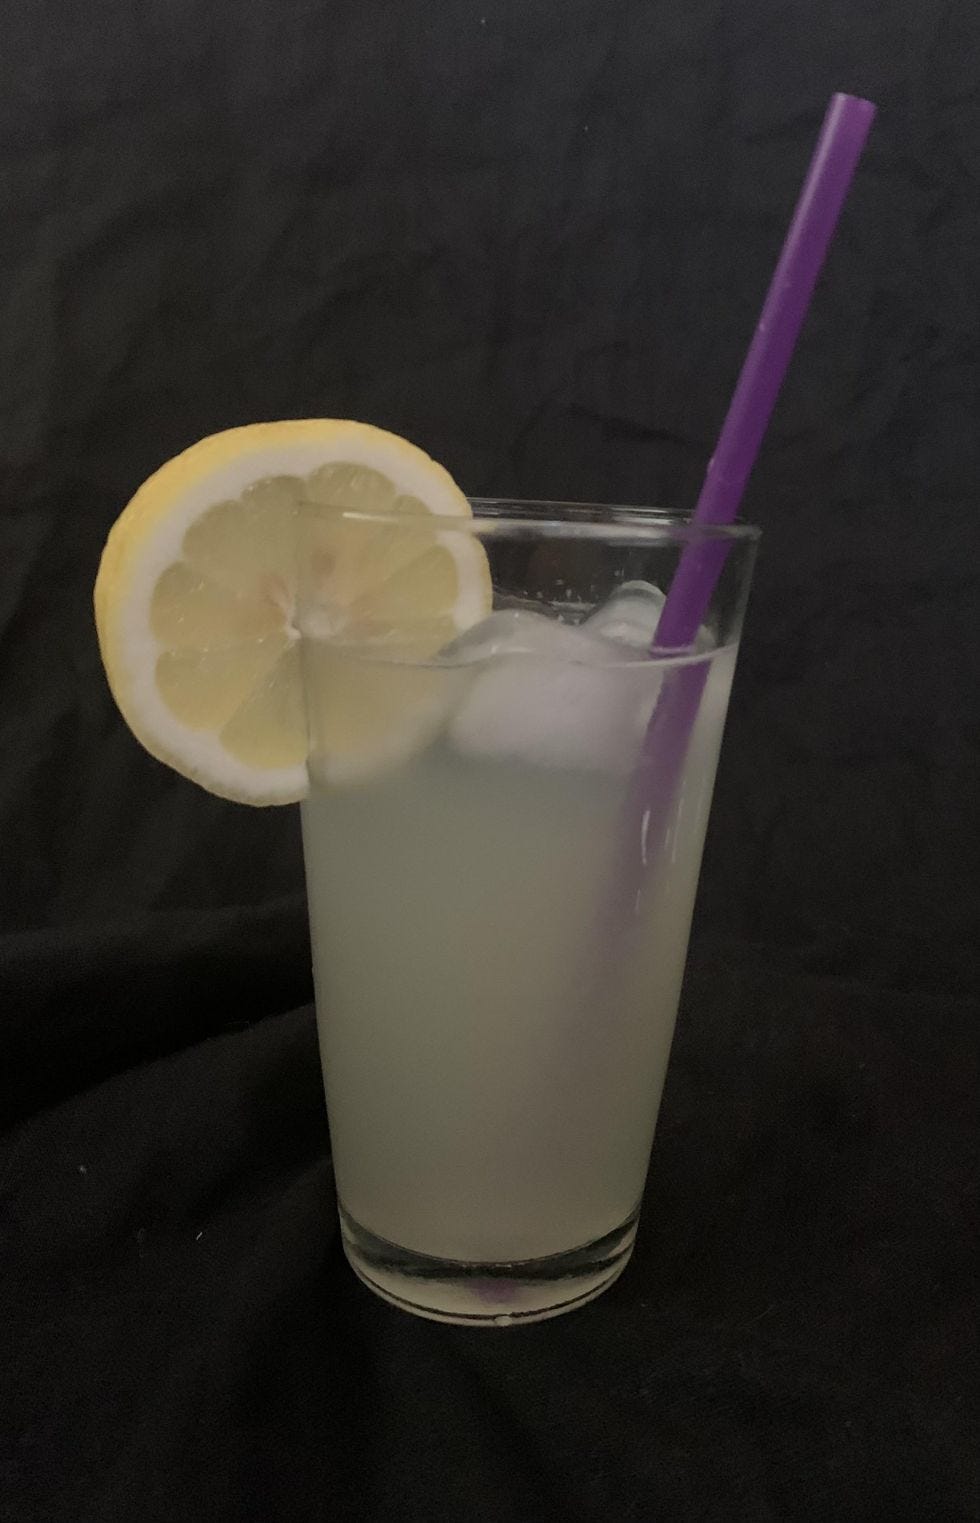 The more lemon juice, the better. Don't skimp. 